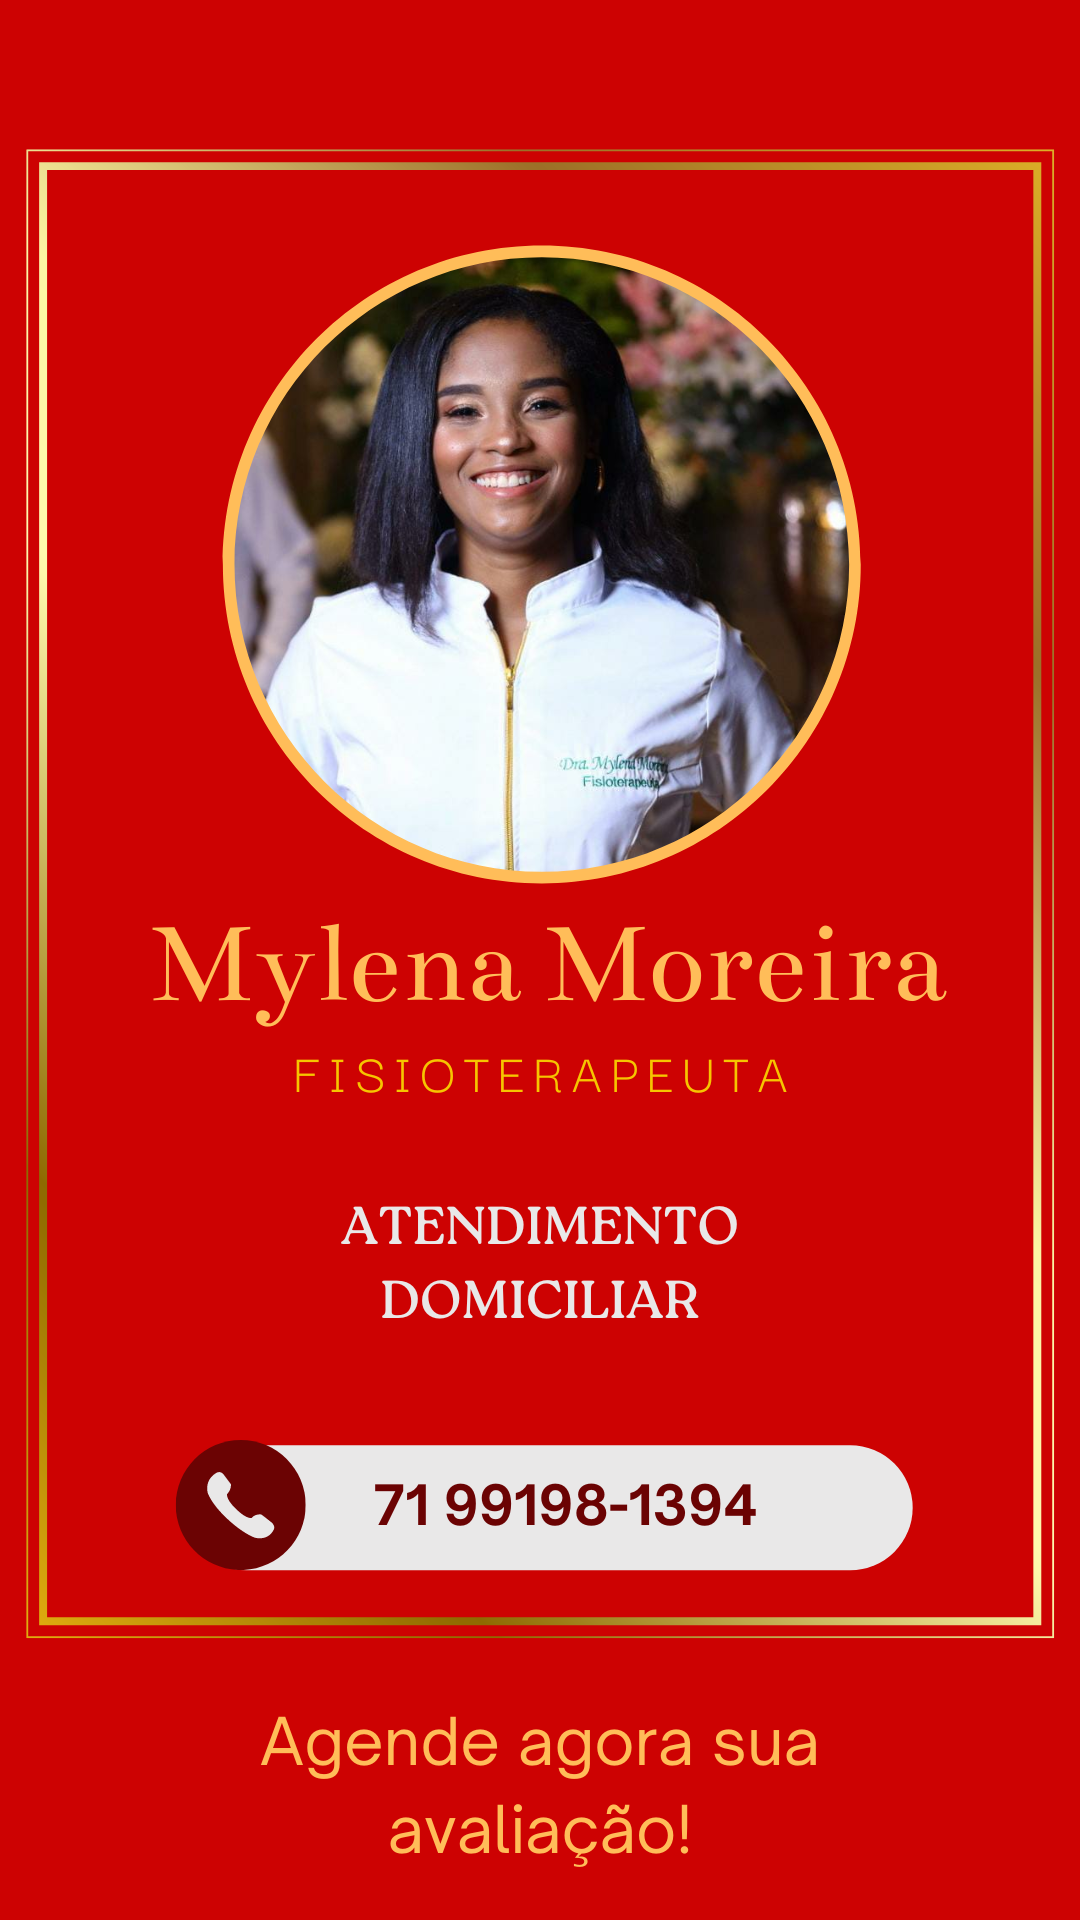 Mylena Moreira

FISIOTERAPEUTA

ATENDIMENTO
DOMICILIAR

| LO) 7199198-1394

Agende agora sua
avaliacao!